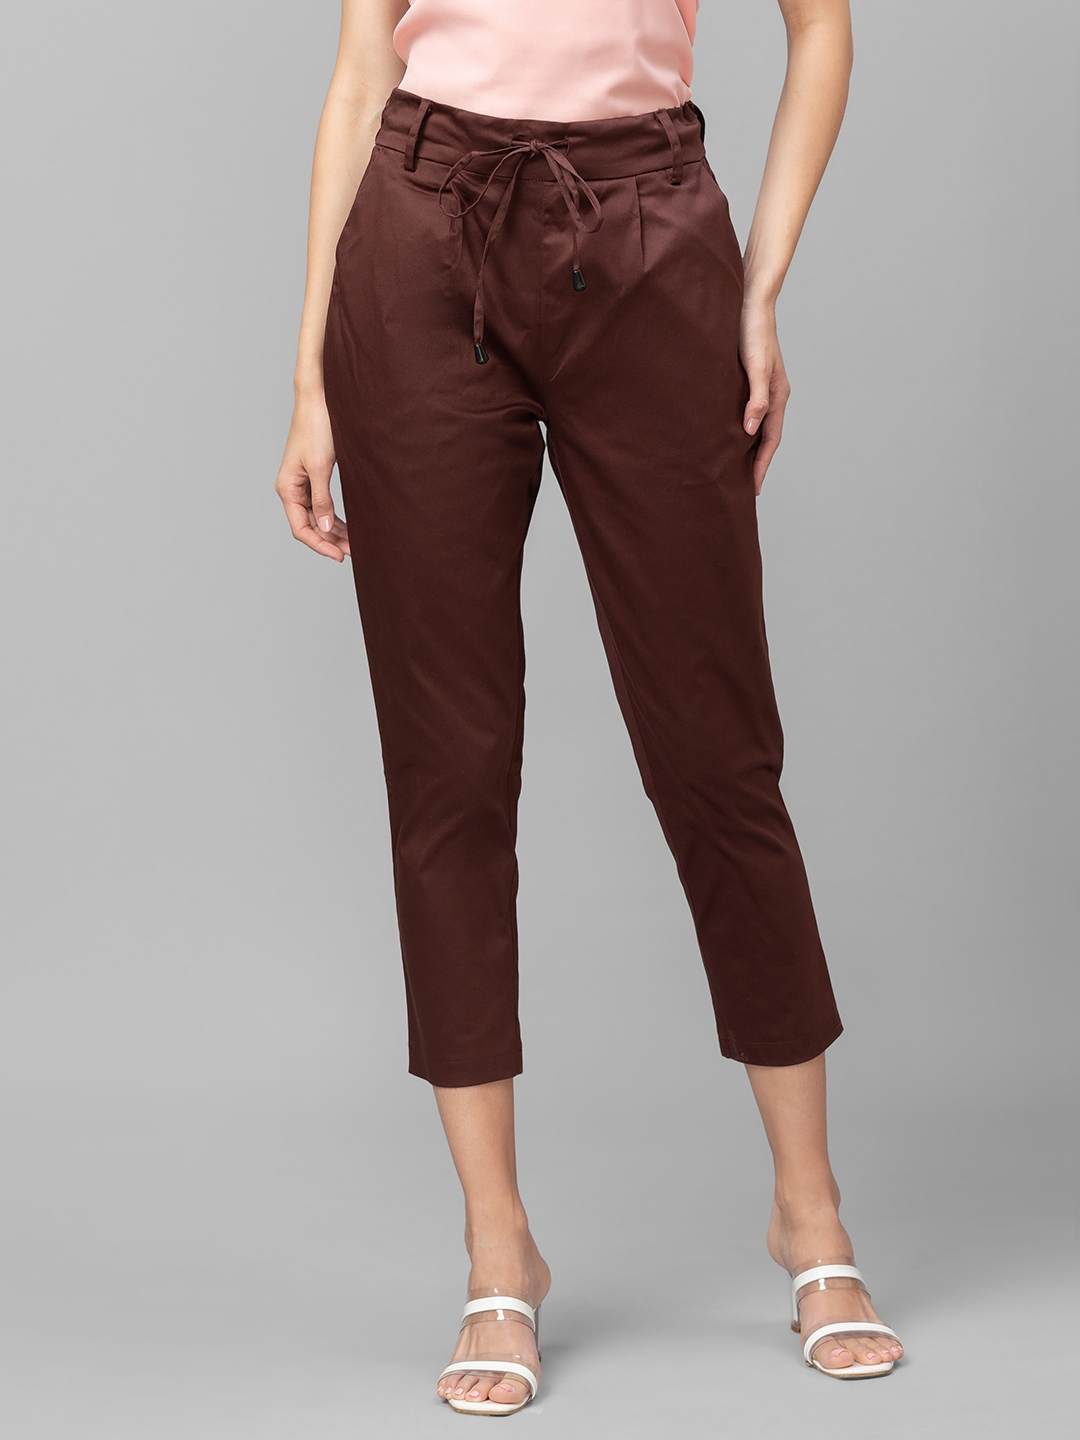 globus | Globus Brown Solid Trousers